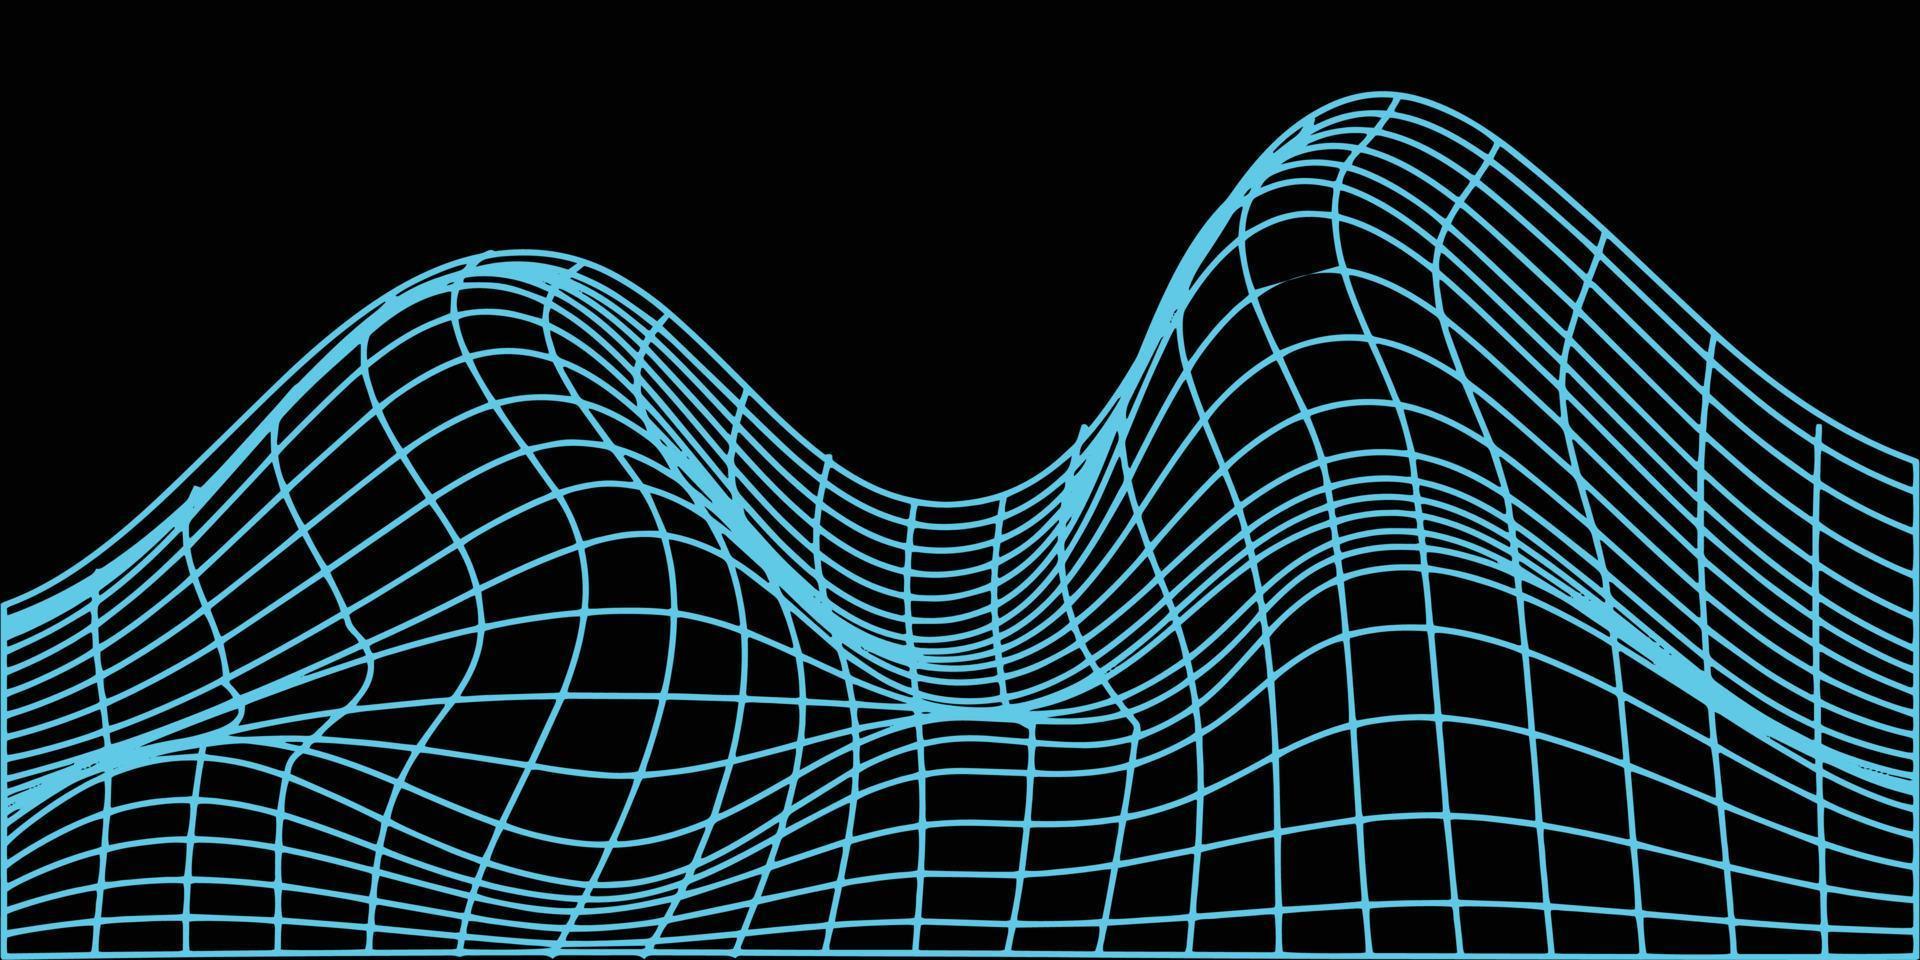 estilo de estructura alámbrica abstracta de los años 80. ilustración de fondo de rejilla futurista retro. elemento gráfico de diseño de tecnología. estilo de diseño cyberpunk en vector. vector